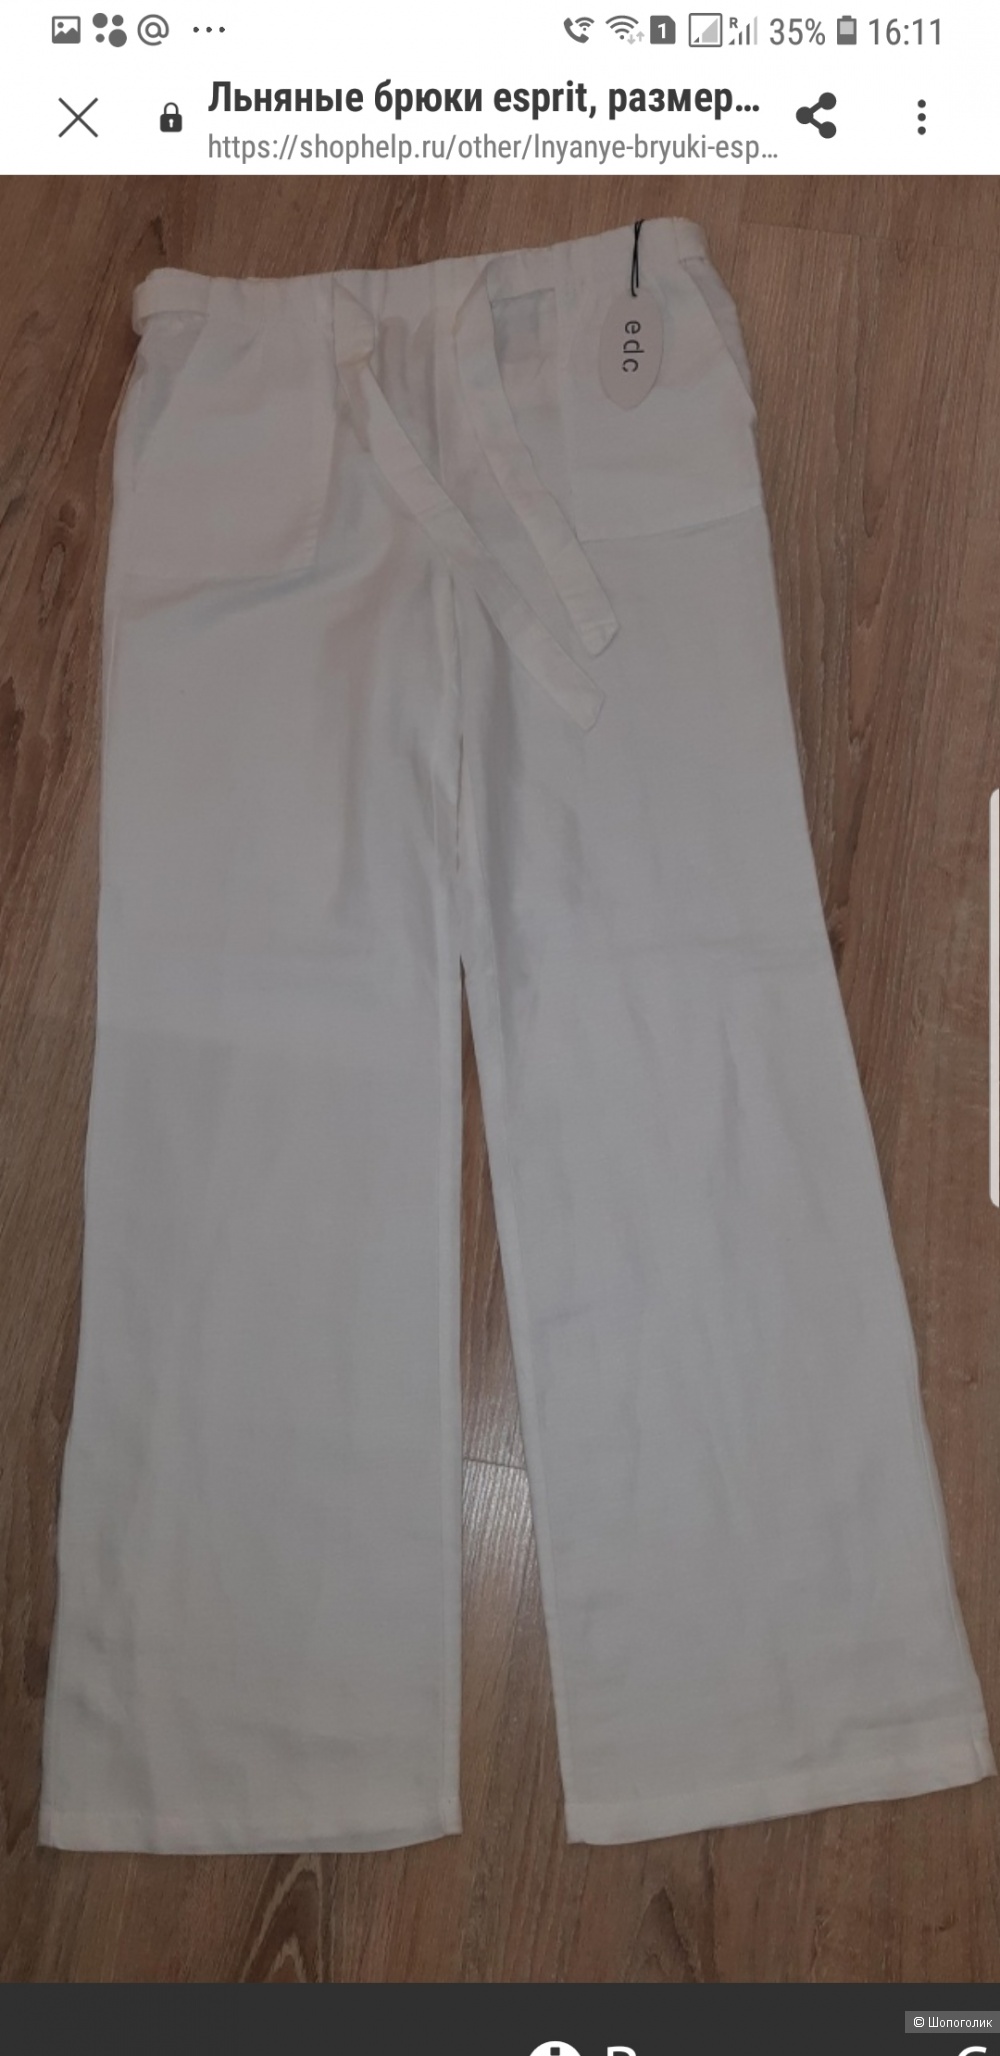 Льняные брюки Esprit, размер 44-46